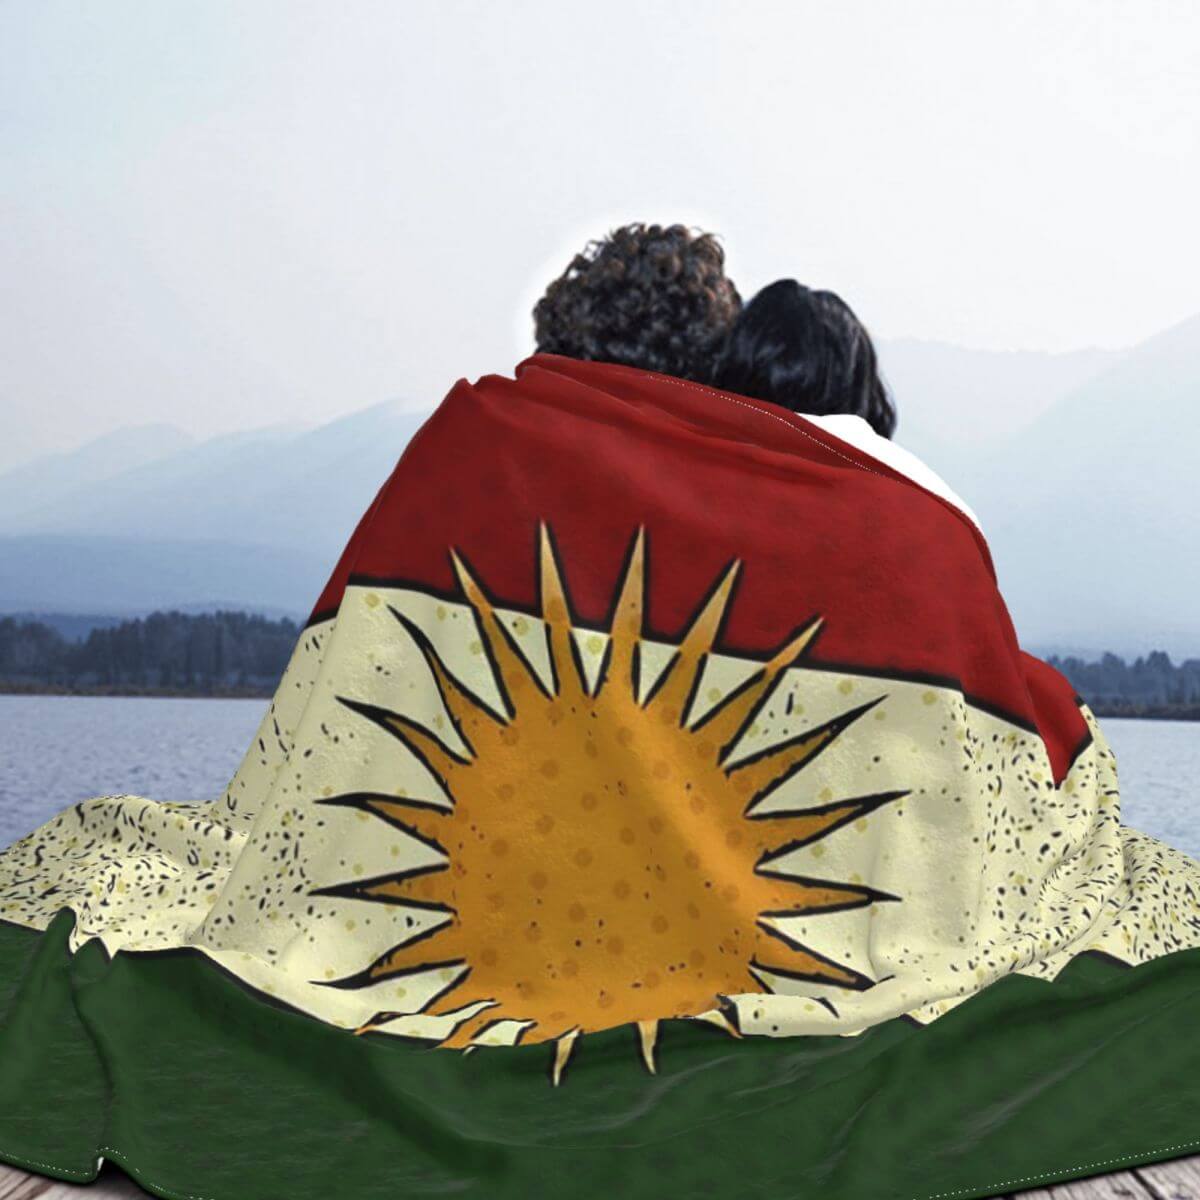 Kurdistan Flagge - Decke zum Wärmen oder als Dekoration